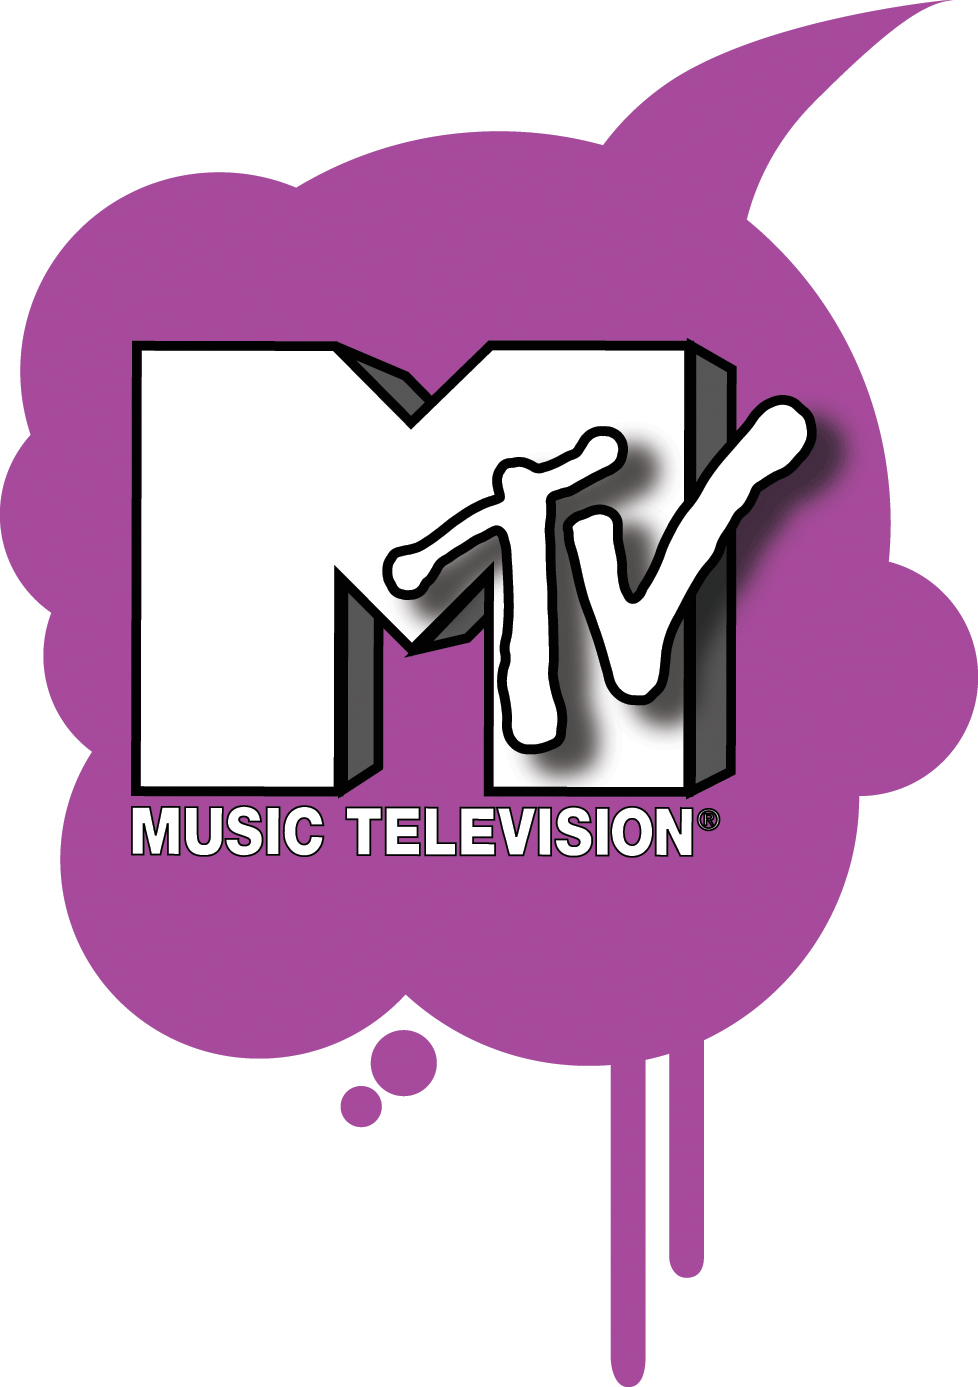 Mtv エムティービー ロゴマーク Logomark Mania 世界のかわいいロゴマーク集 企業ロゴ ブランドロゴ